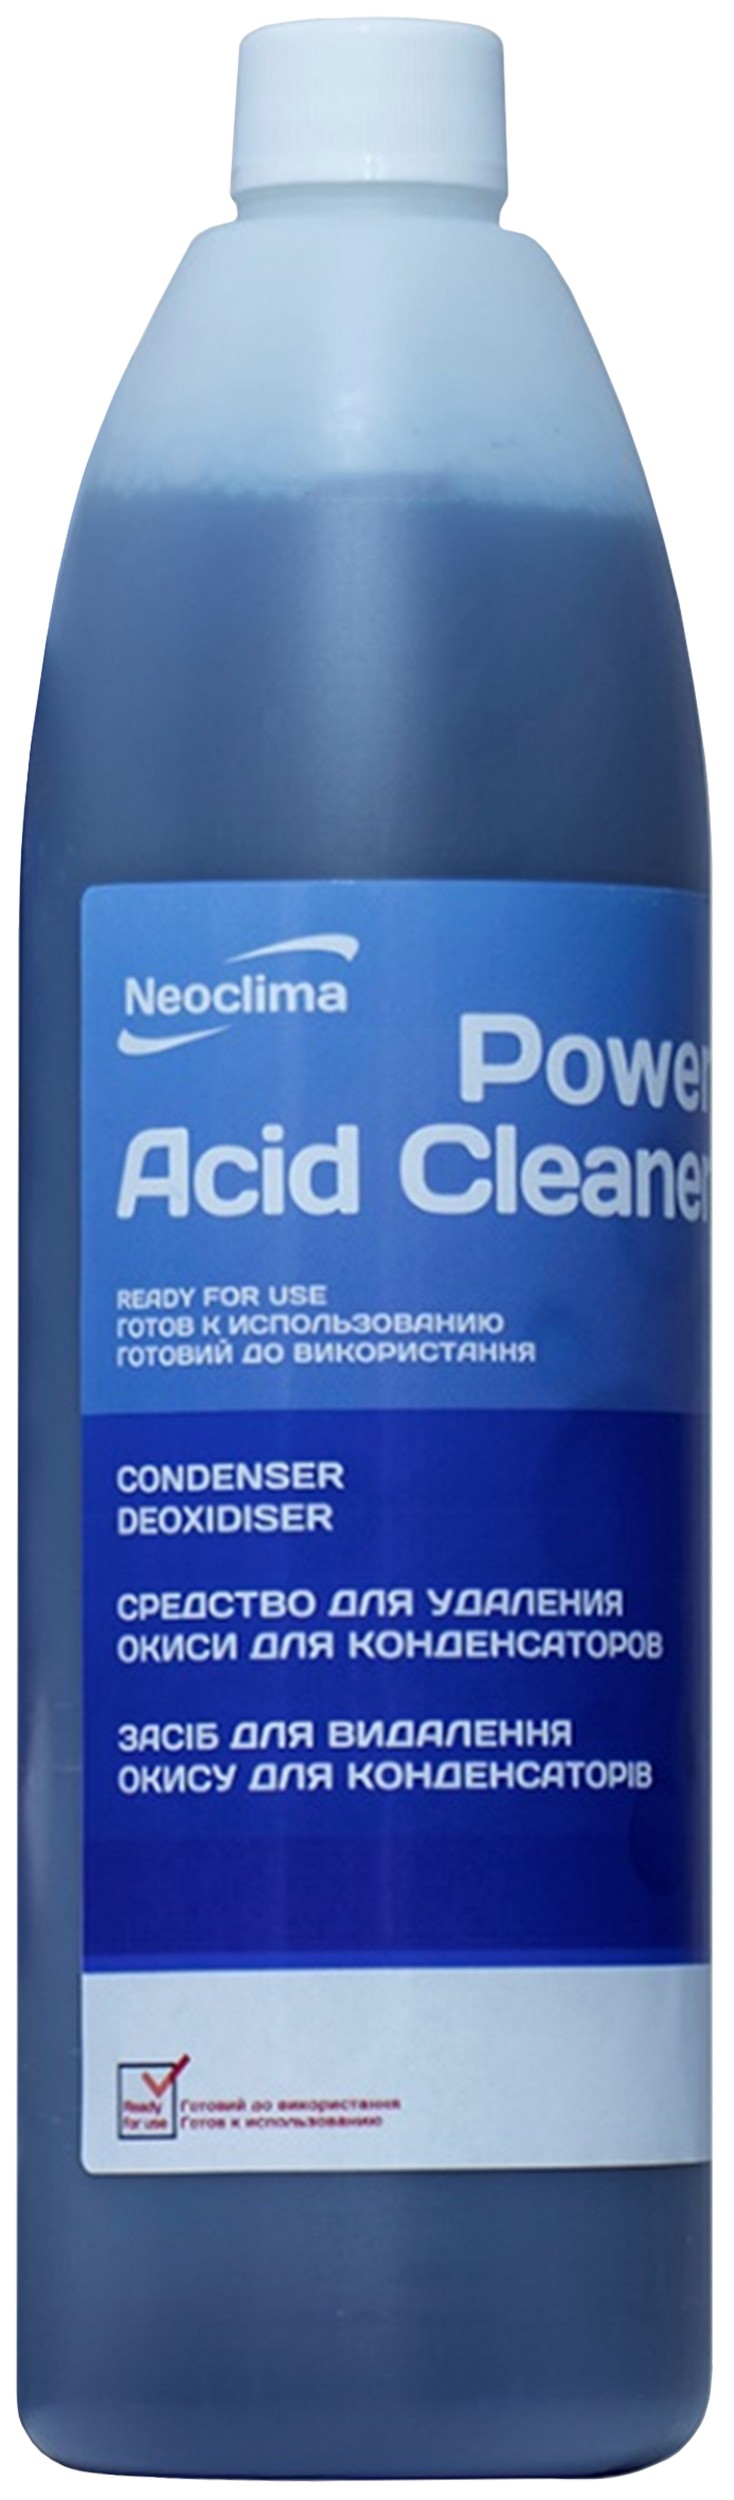 Очиститель внешнего блока Neoclima Power Acid Cleaner 1 л, спрей